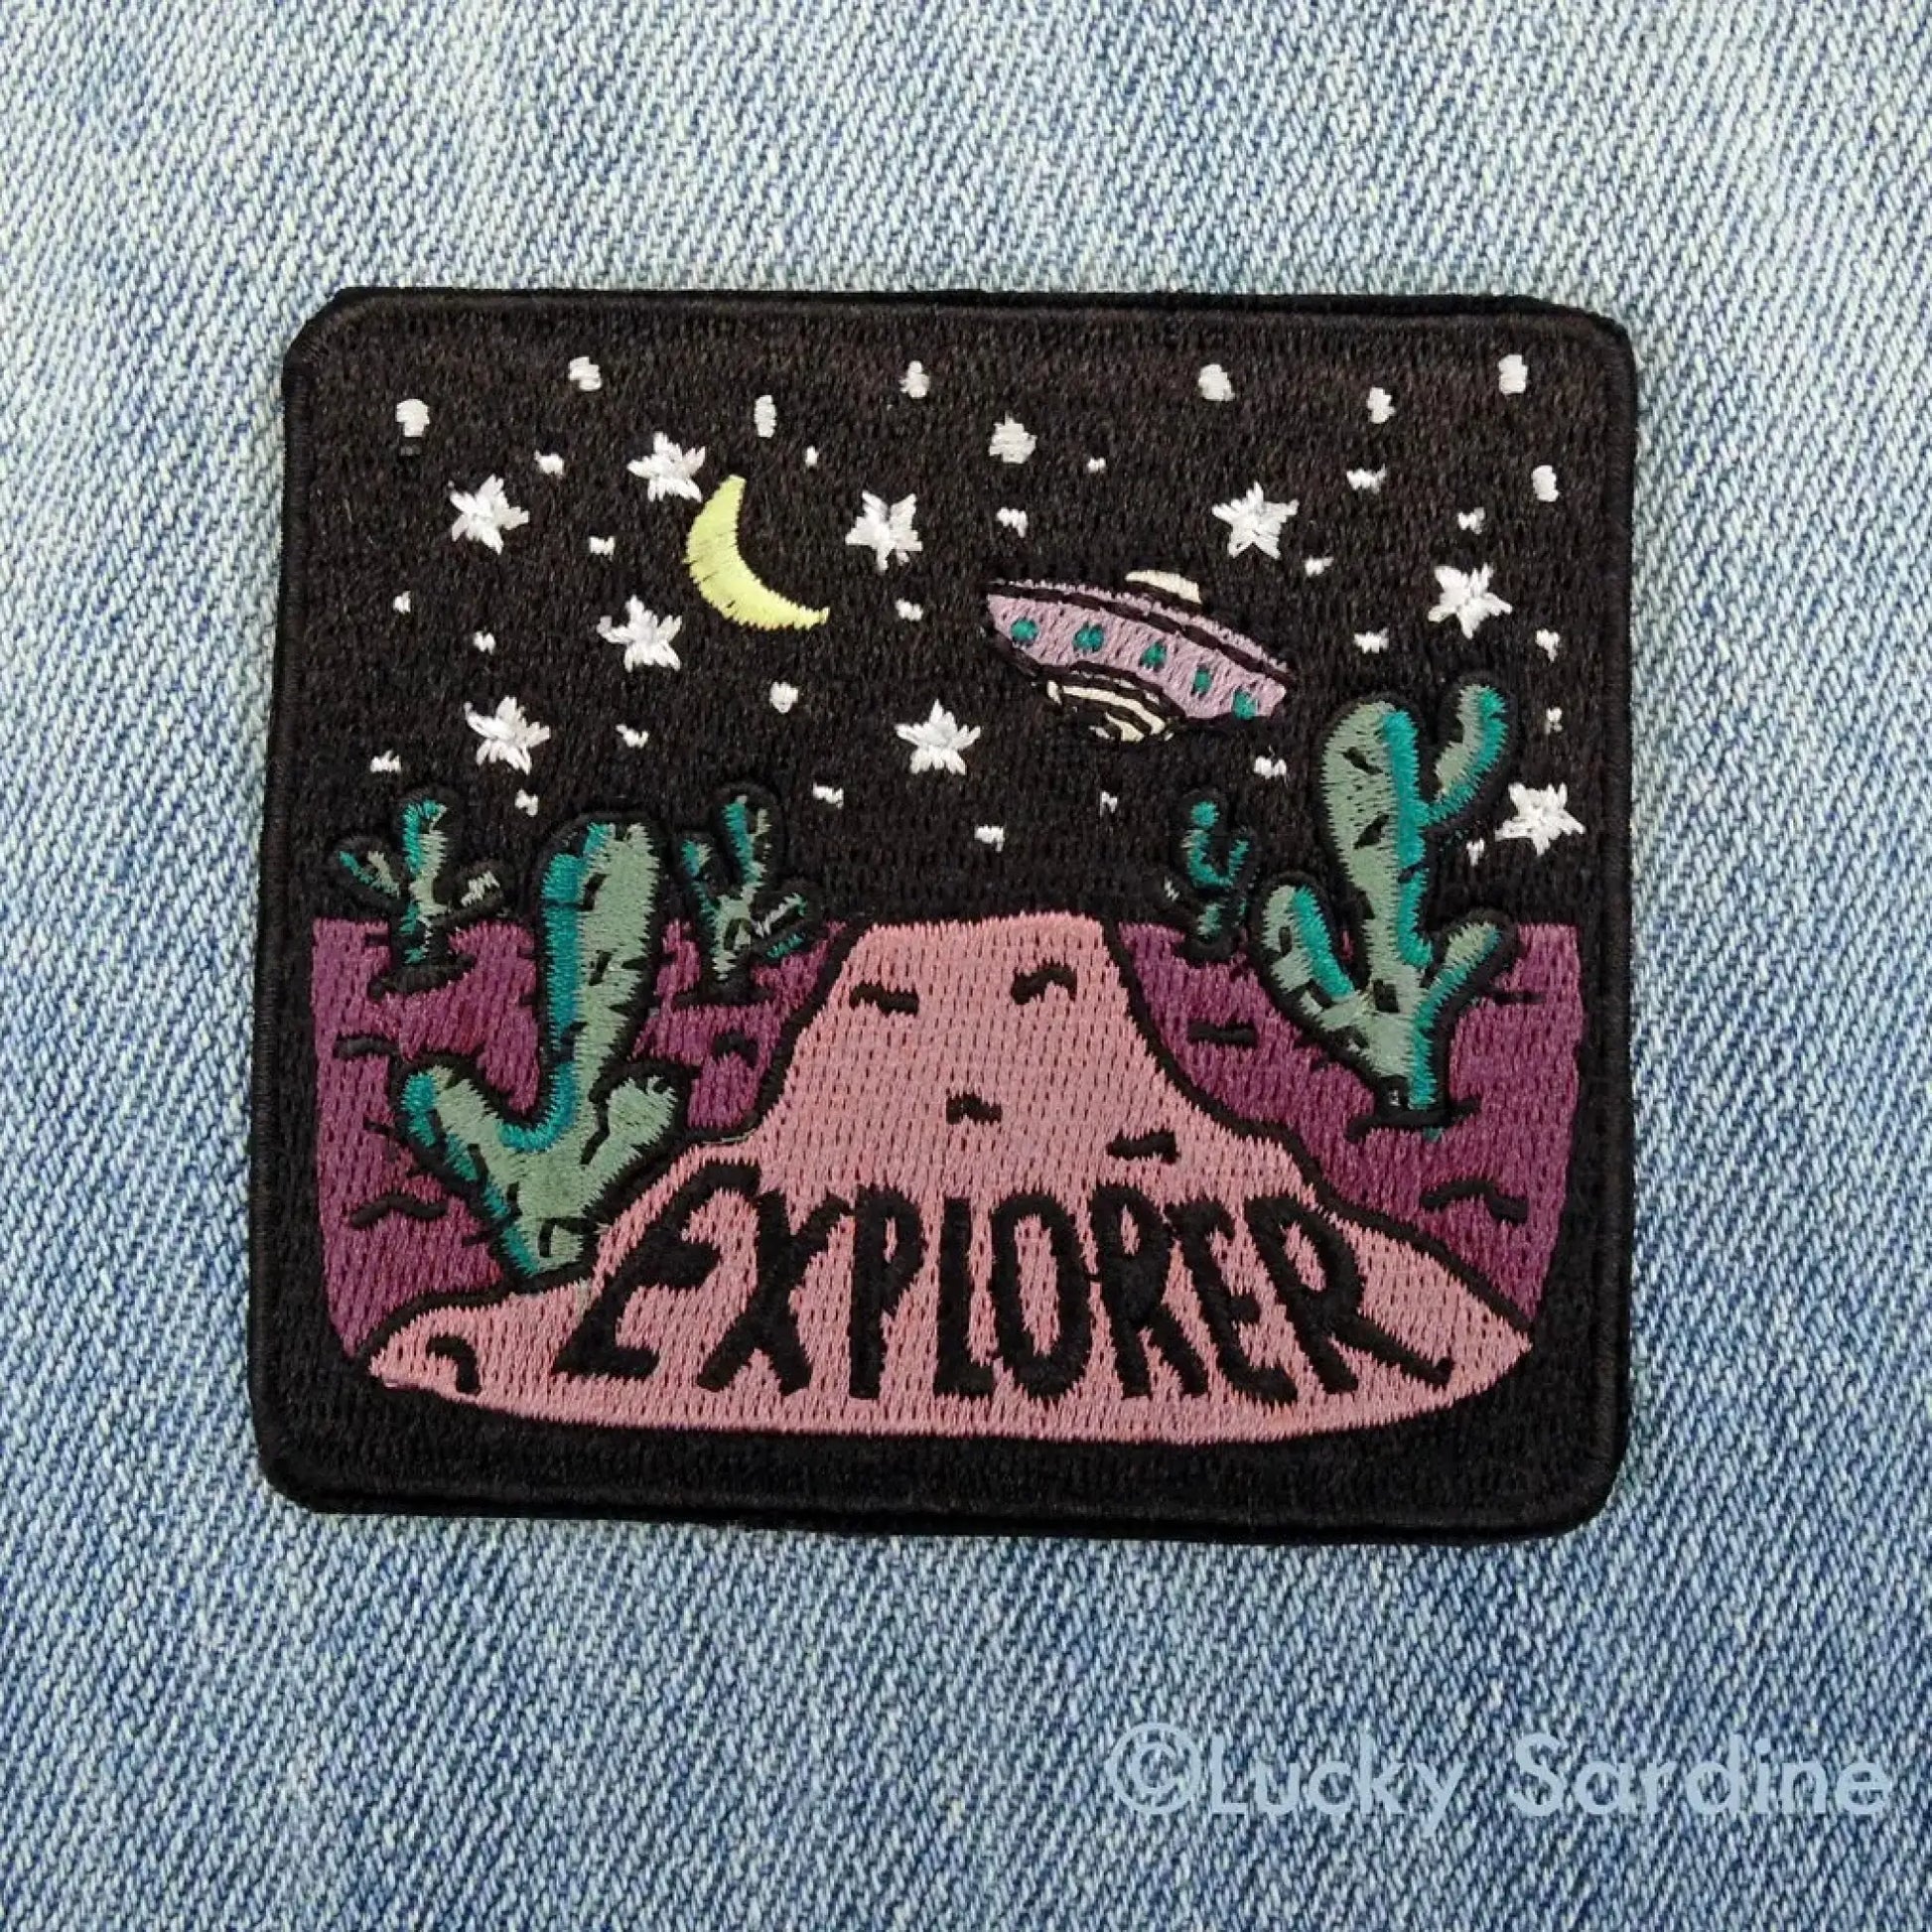 Desert Night Spacecraft Explorer Embroidered Patch